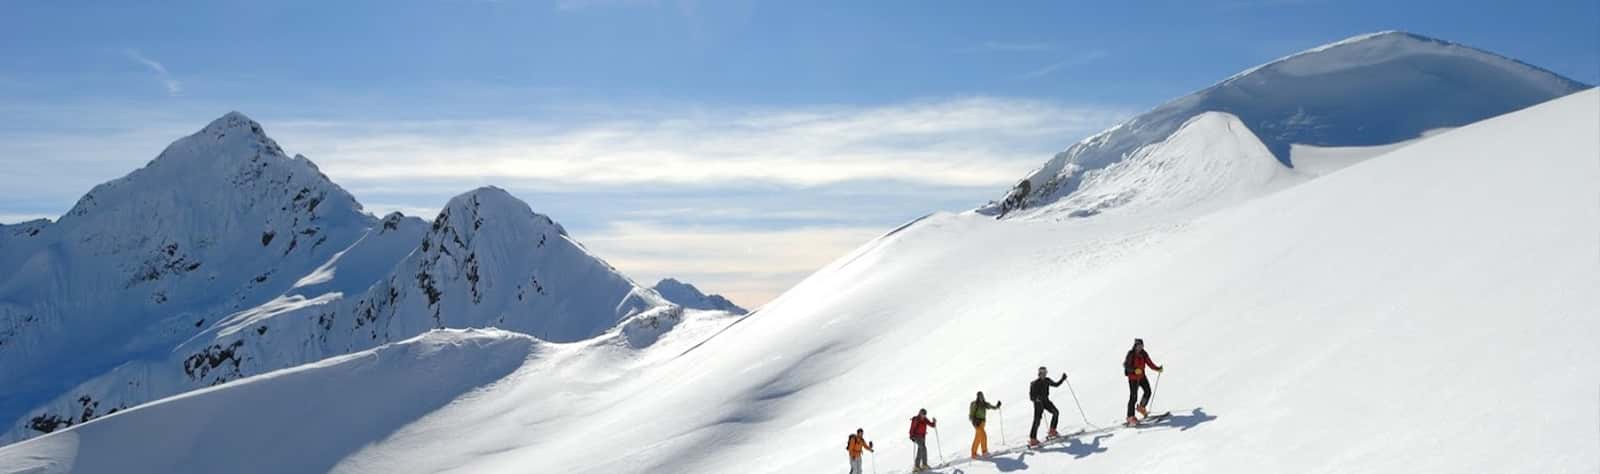 SkiWelt Ski Area